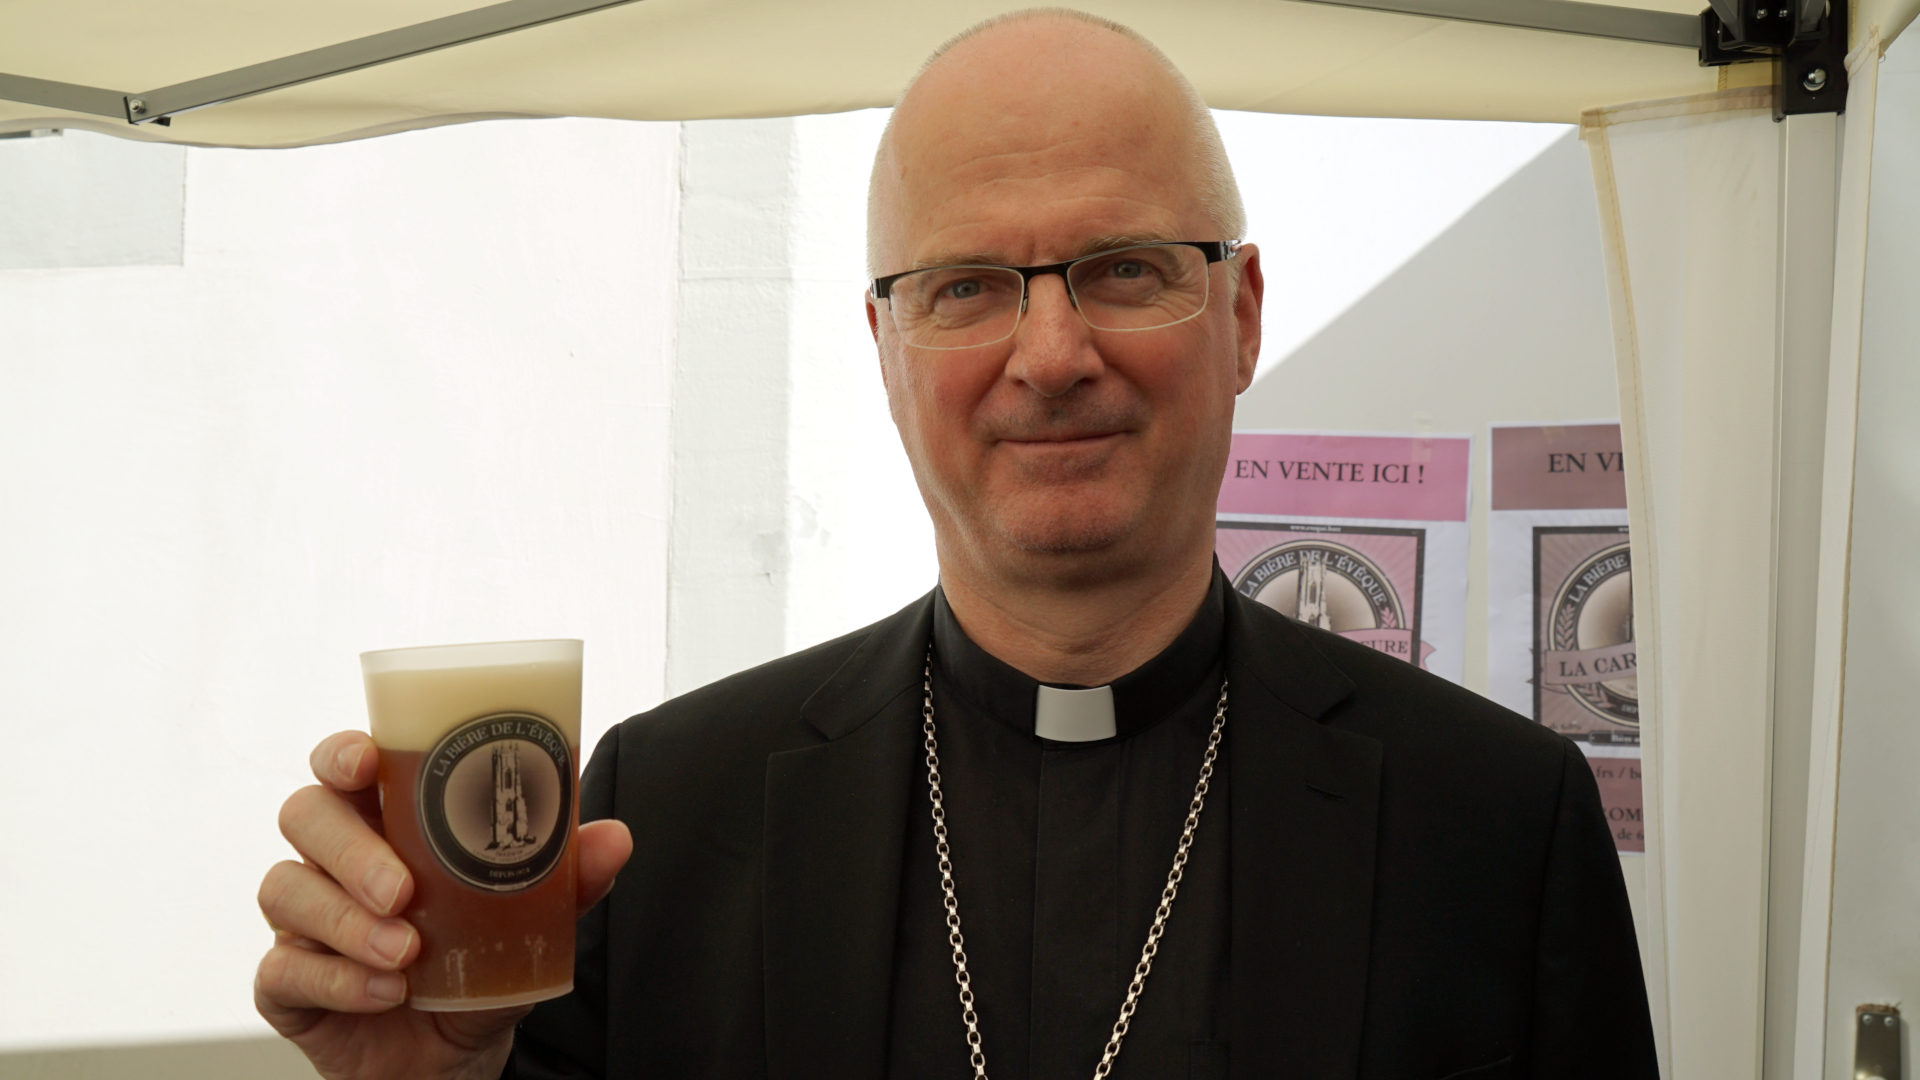 Bischof Morerod und sein Bier